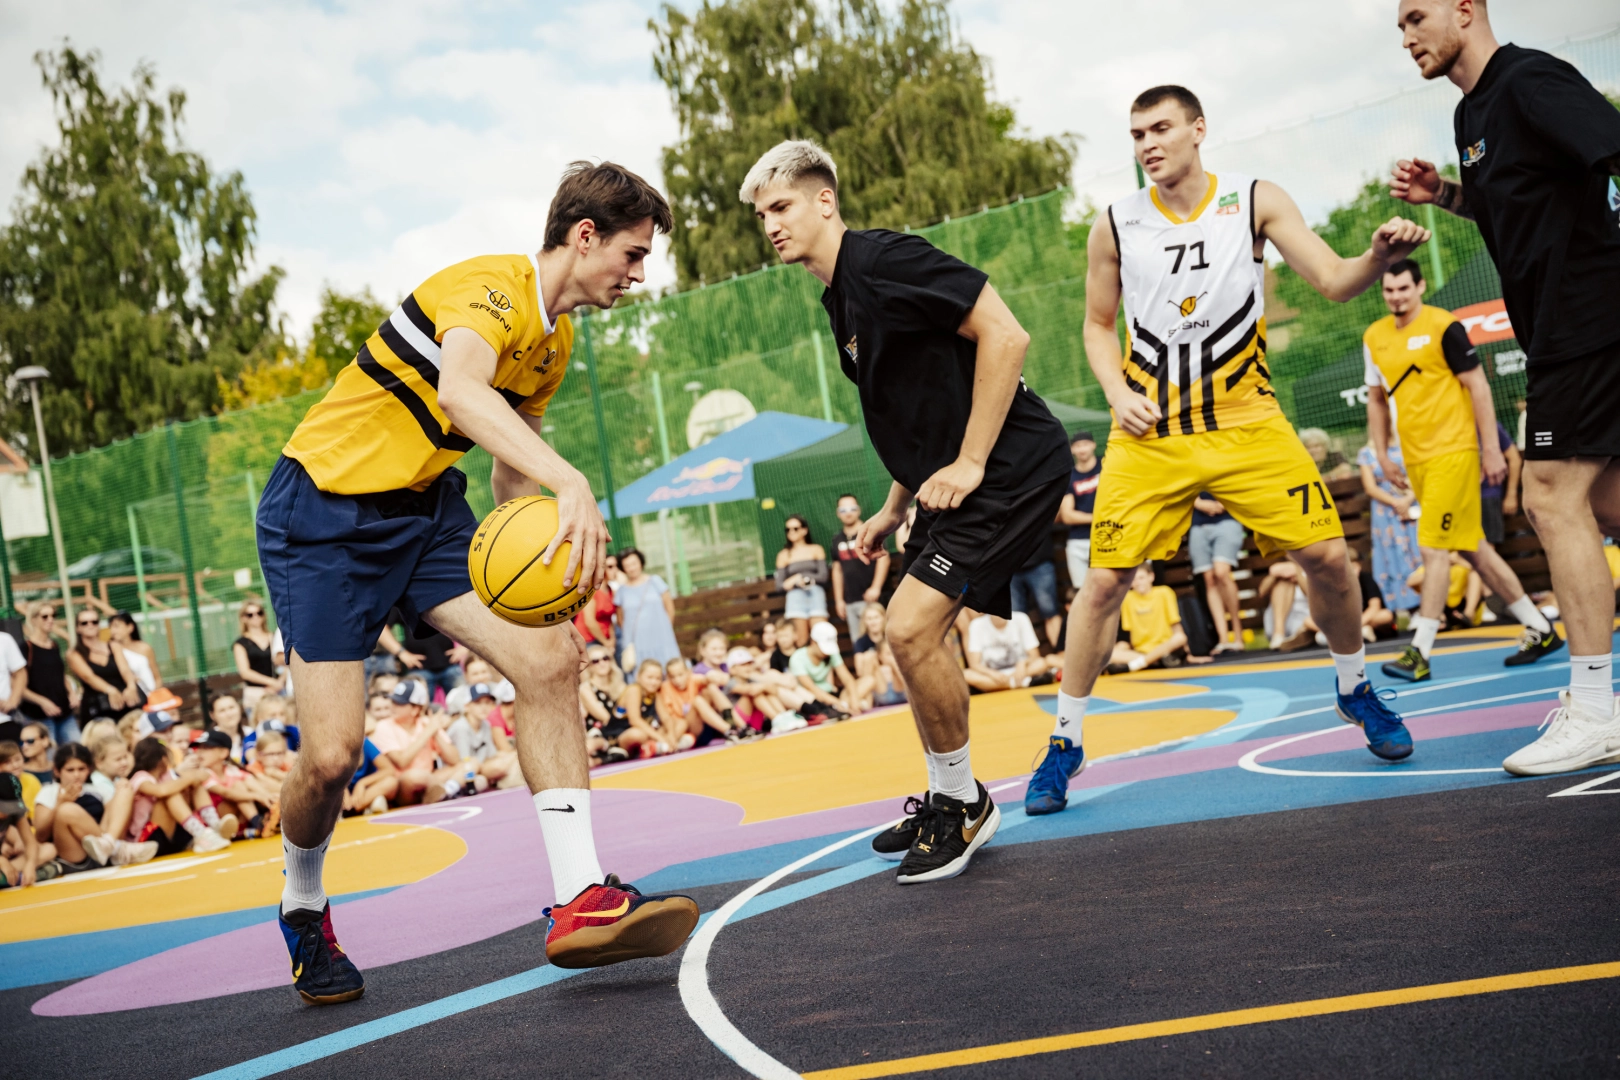 Basketbalista Vít Krejčí spolu s NBA otevřel nové hřiště v Písku